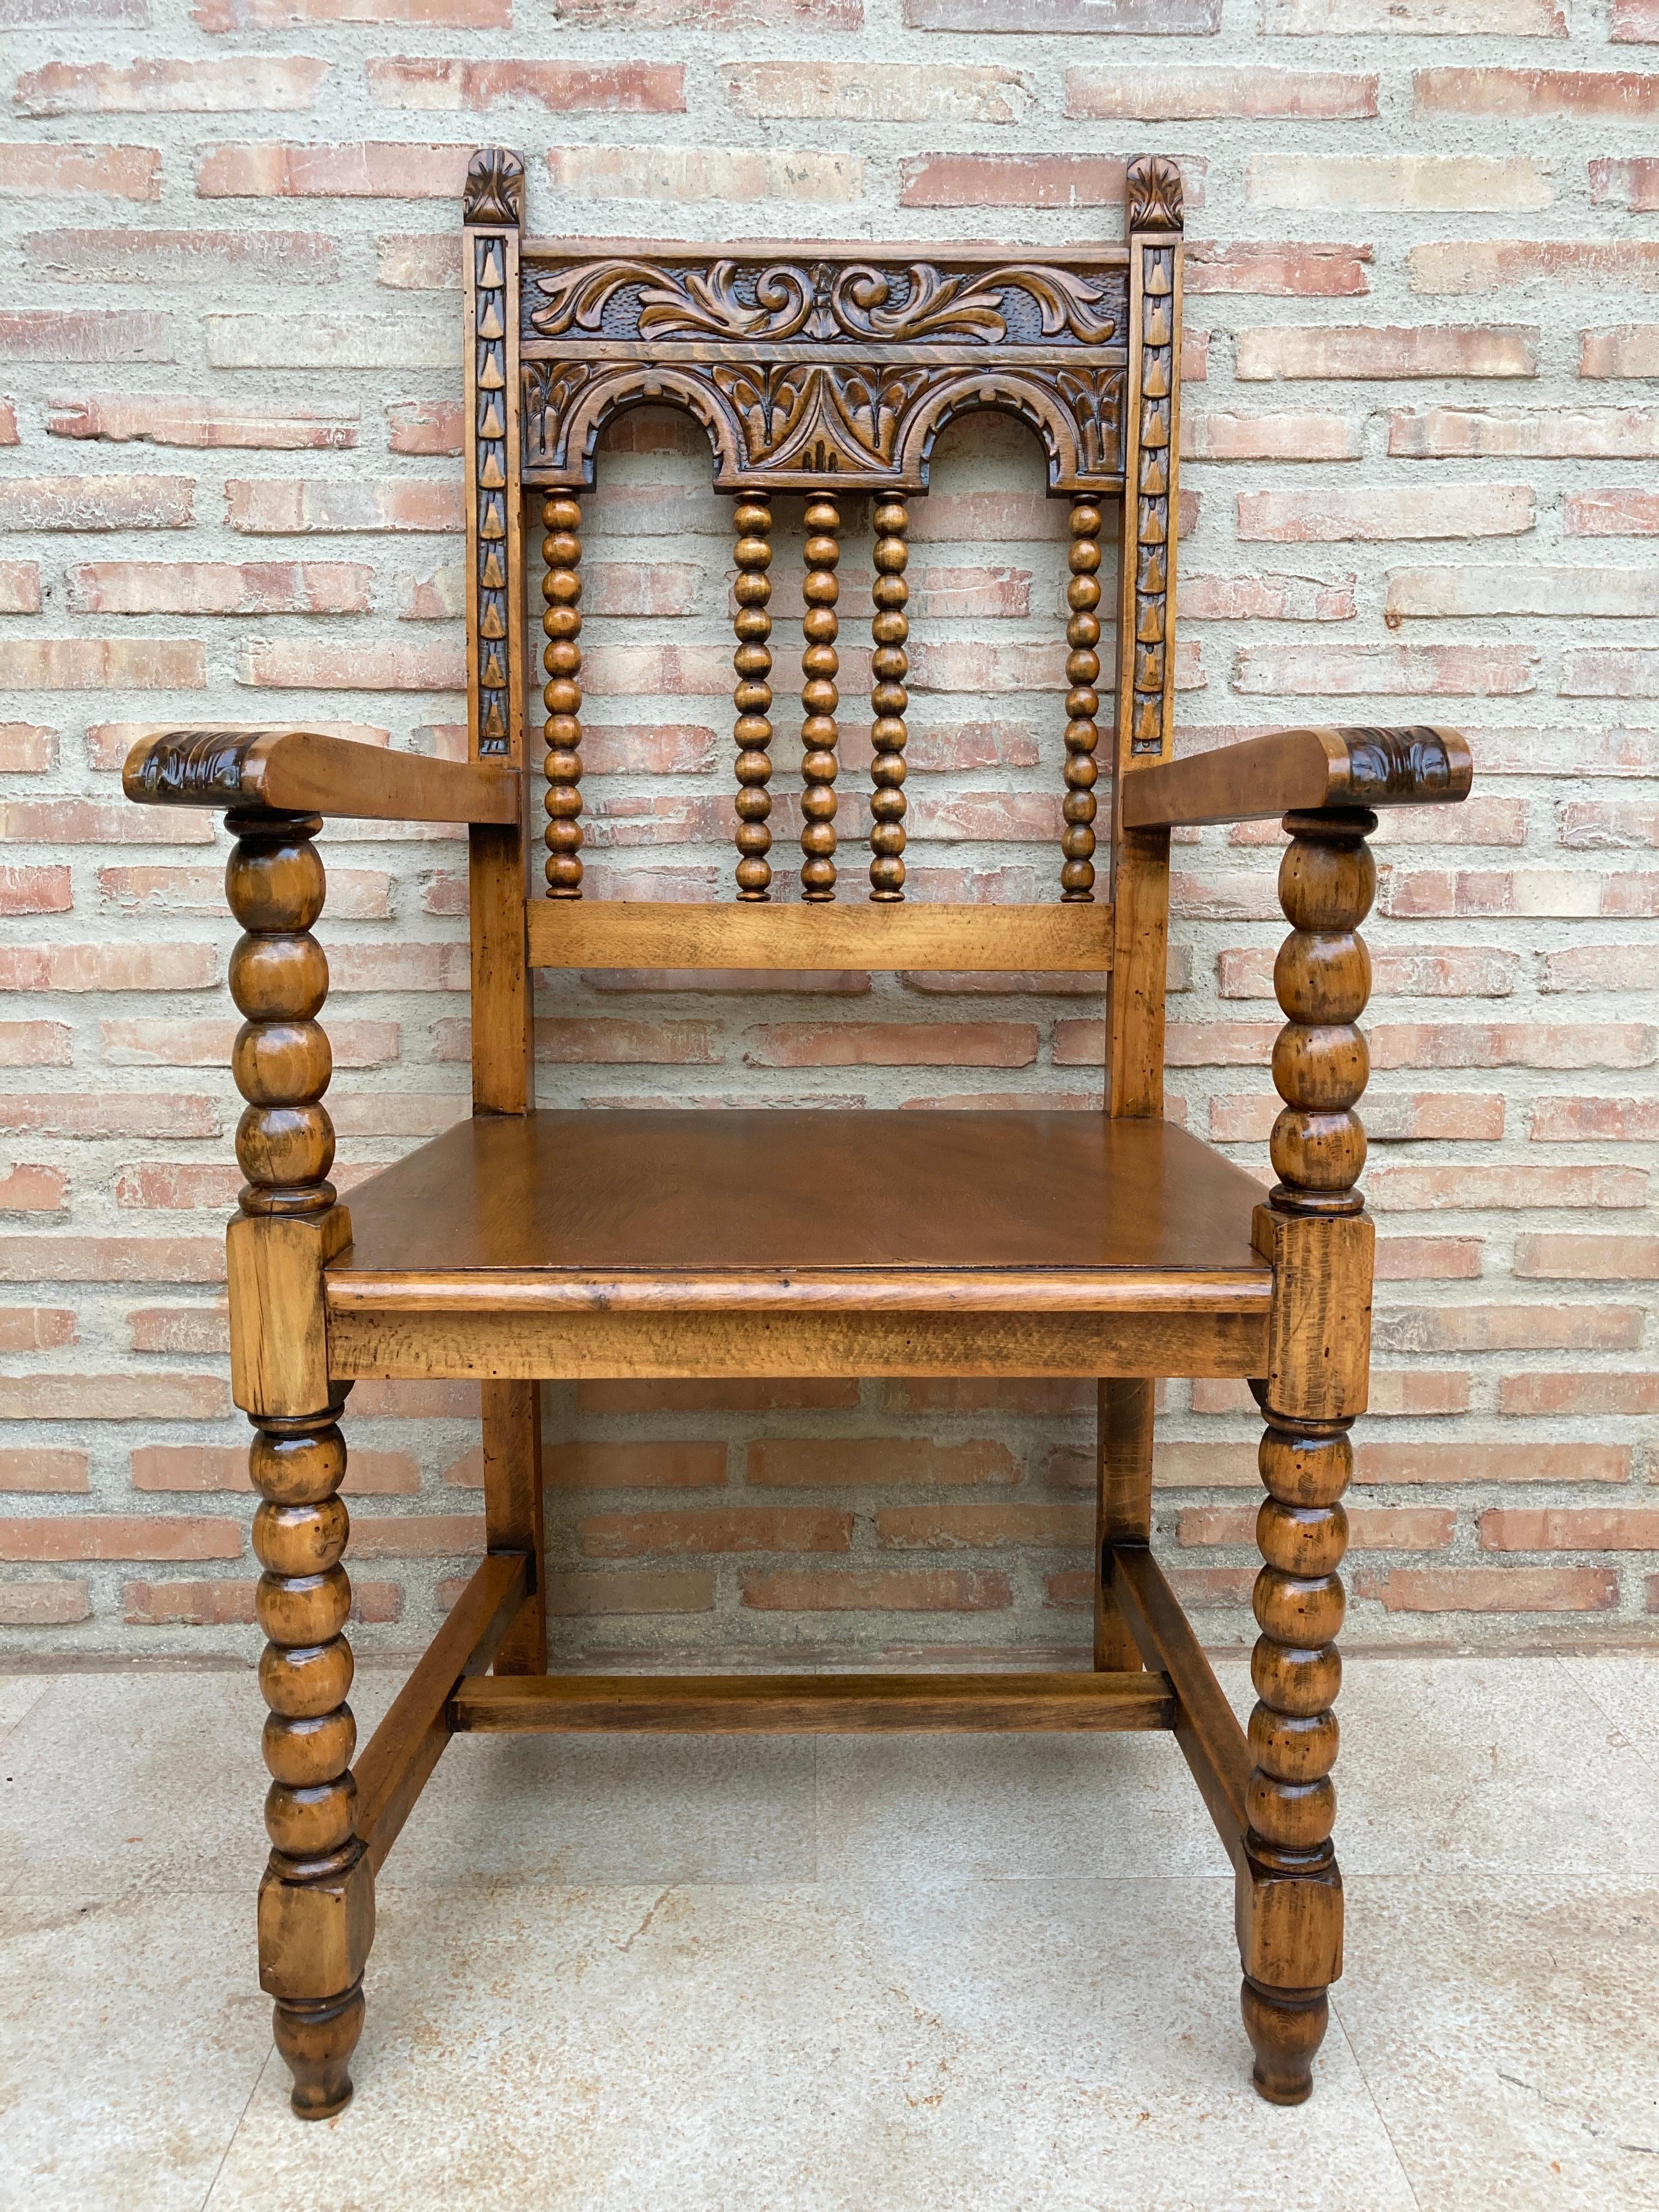 fauteuil en bois tourné en chêne sculpté du XIXe siècle.
Parfait pour être placé dans votre chambre ou dans votre bureau avec la table bureau ensemble.
Les cadres sont ornés de torsades d'orge et d'accoudoirs sculptés à volutes.
Le dossier et les